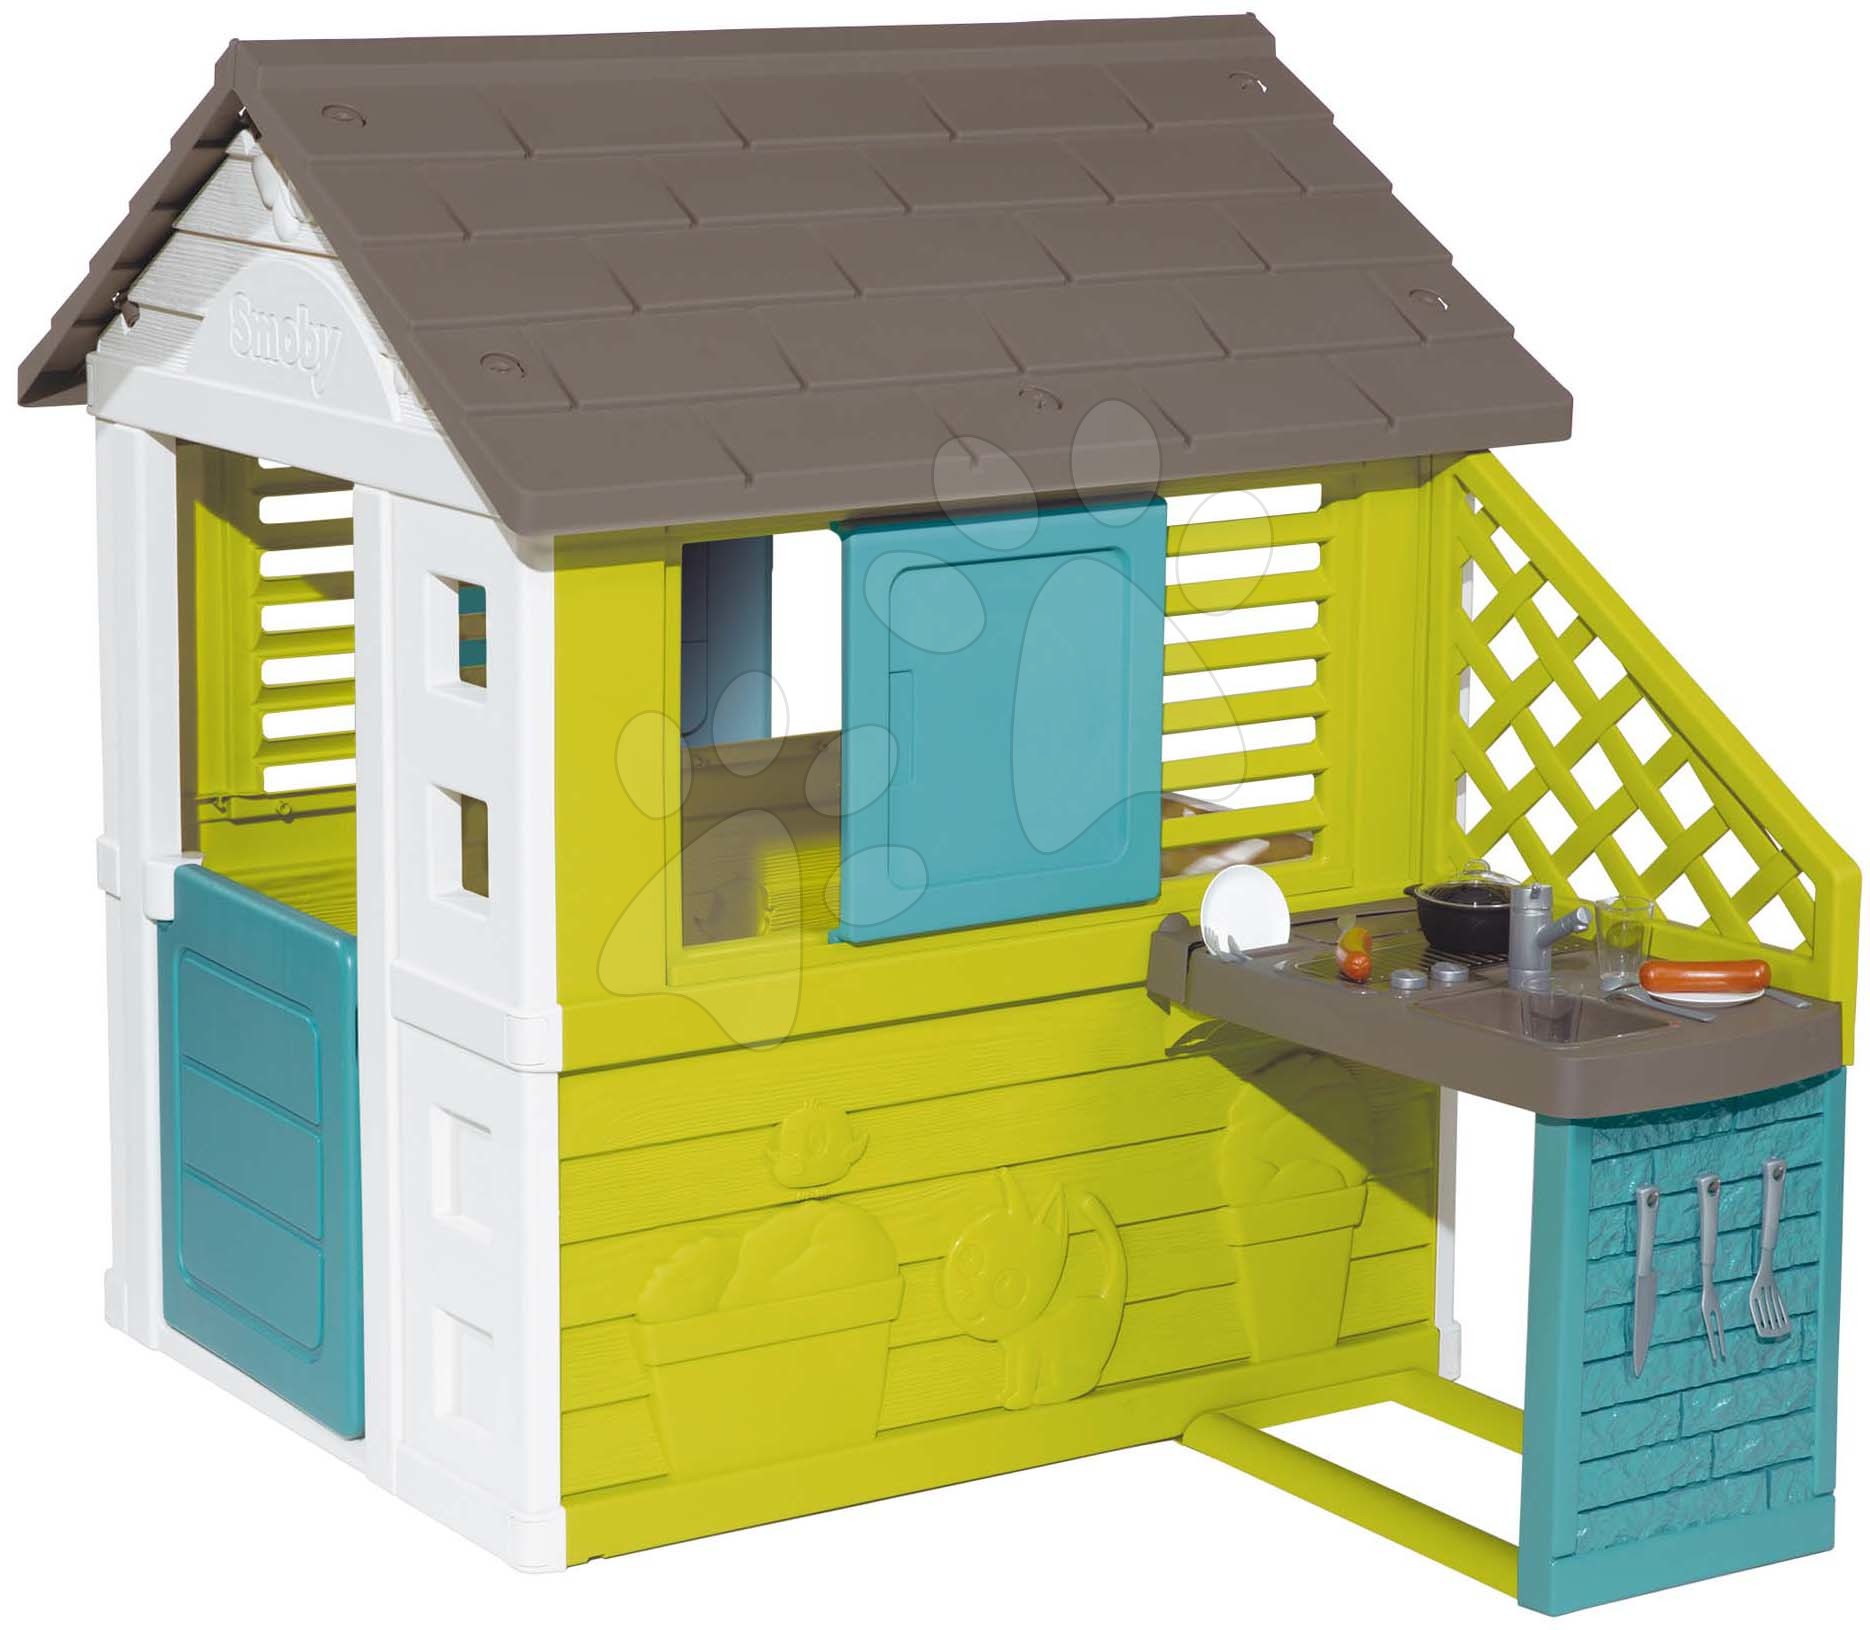 Domečky pro děti - Domeček s kuchyňkou Pretty New Grey Playhouse&Kitchen Smoby a 2 okna s posuvnými okenicemi a poloviční dveře UV filtr od 2 let